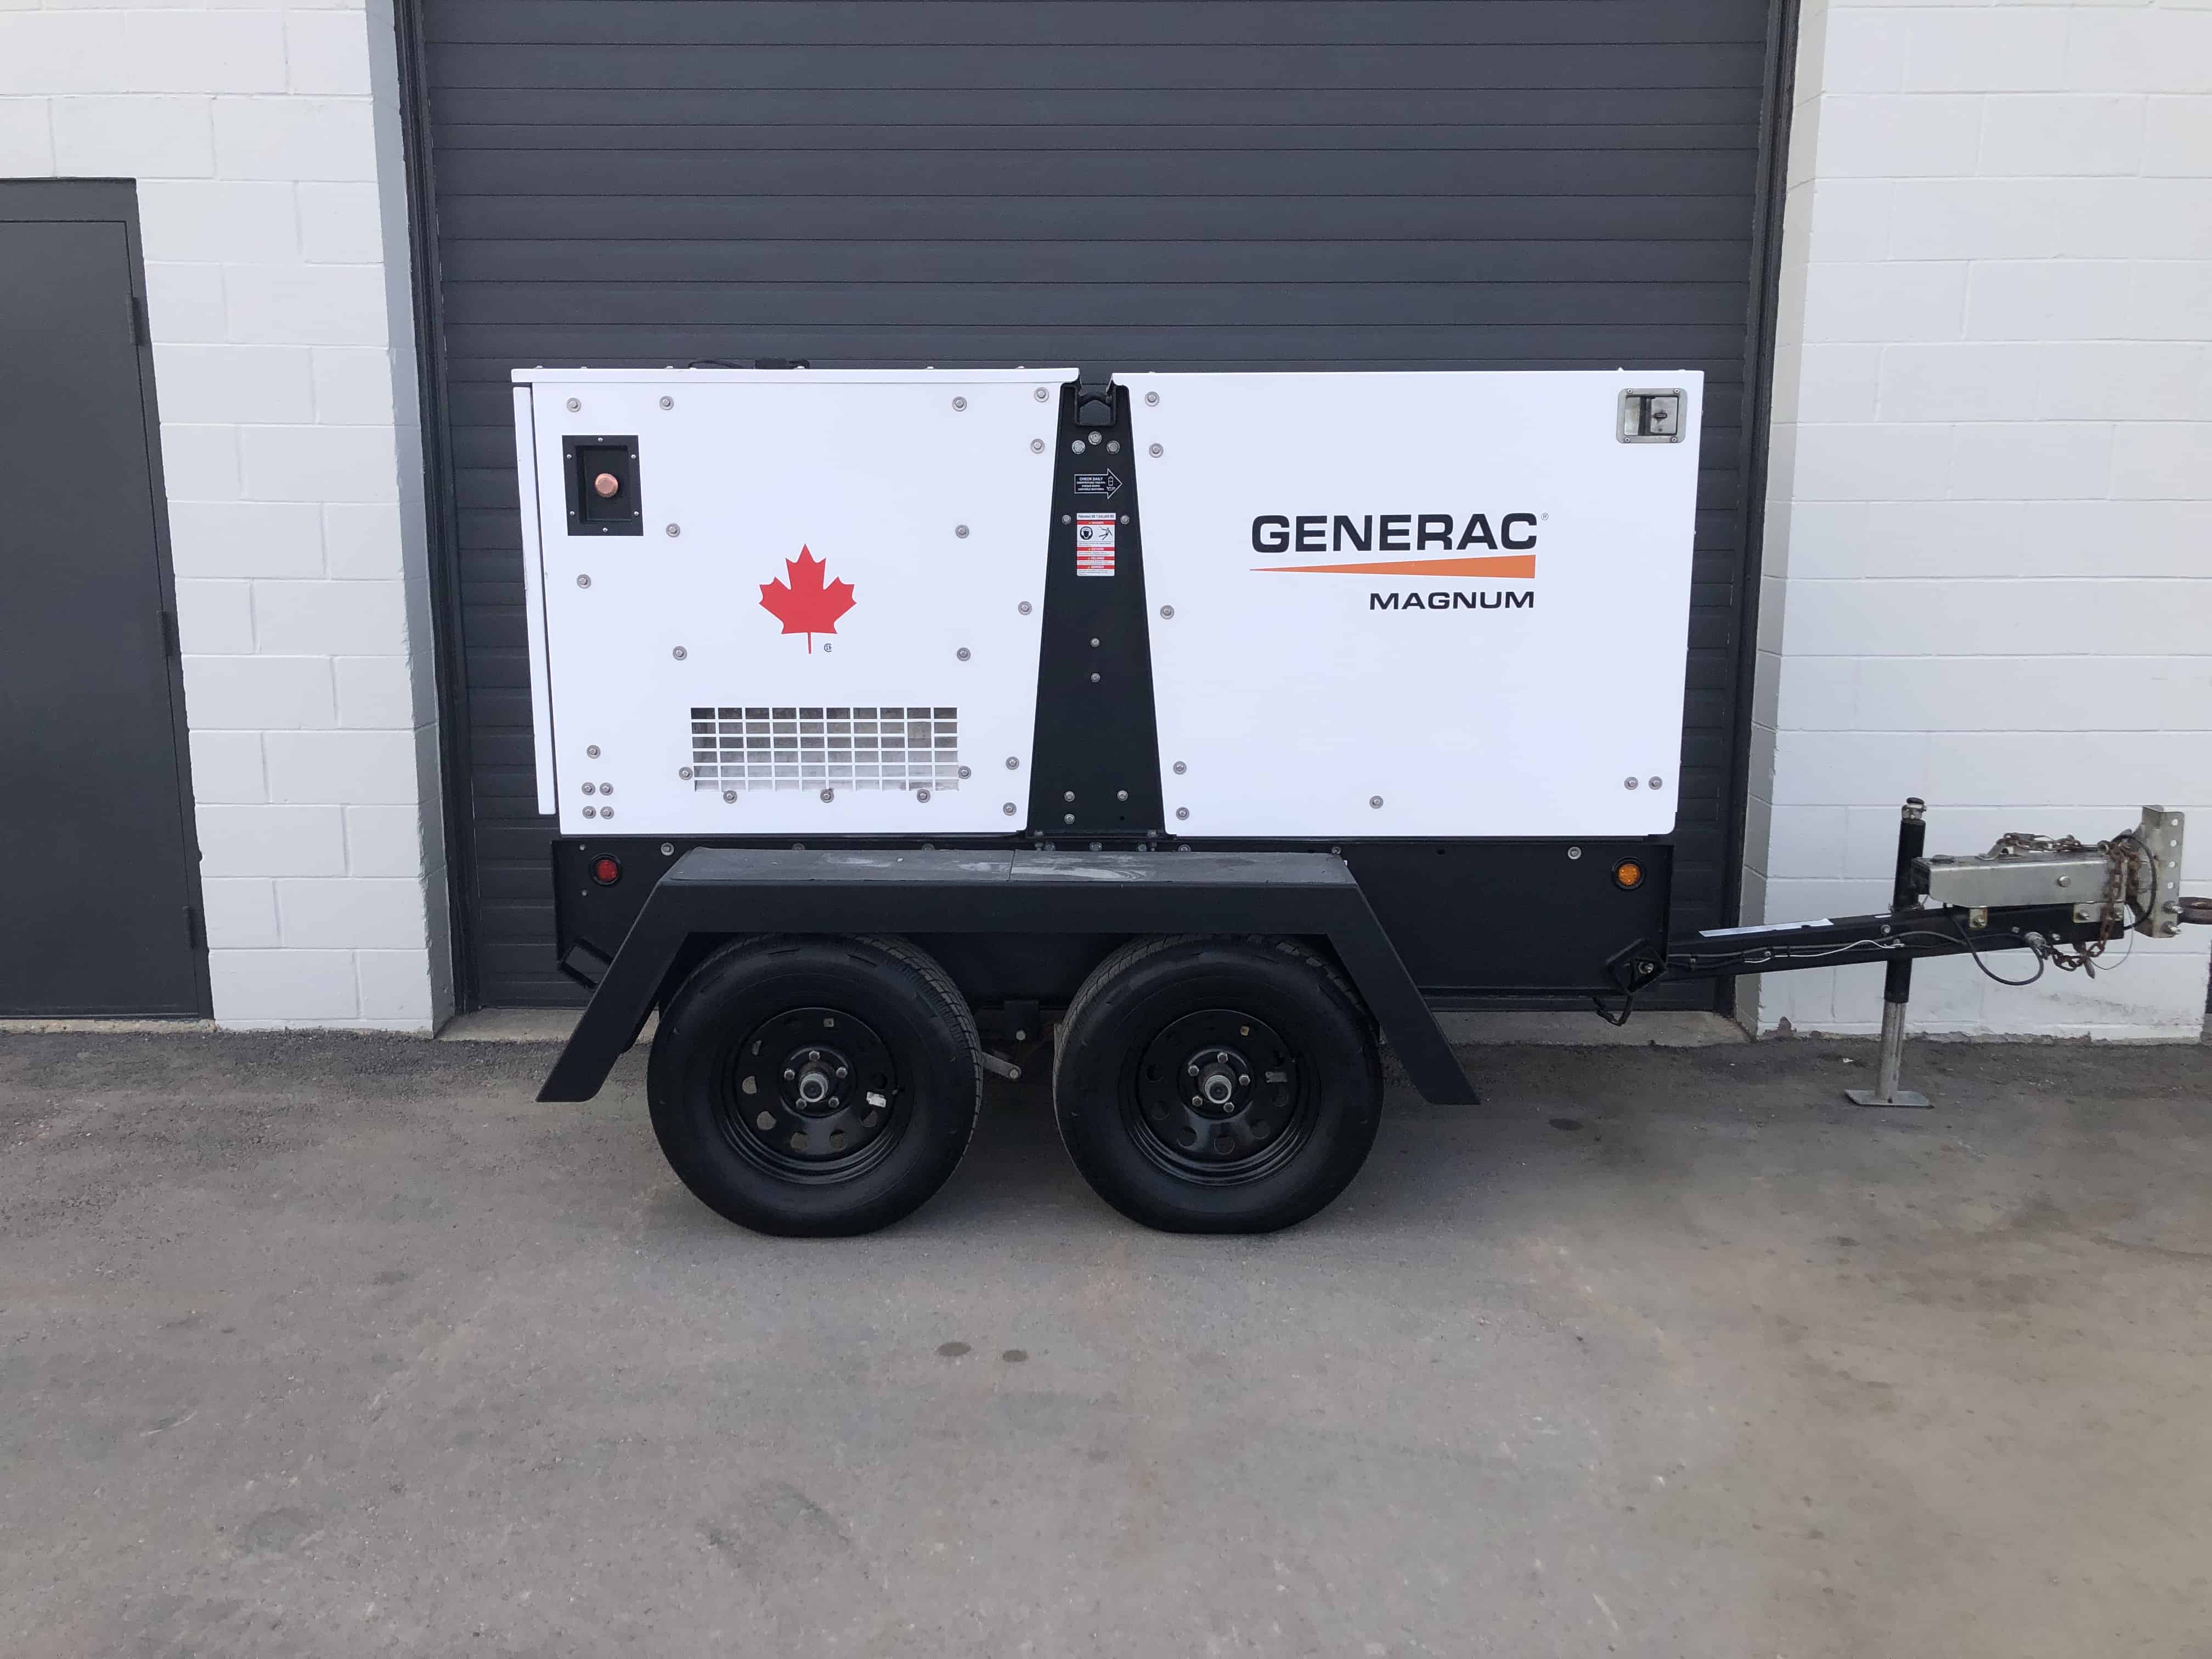 Used 35 KW Generac MMG45 for sale diesel generator genset in Victoria, Kamloops, Fort St John British Columbia